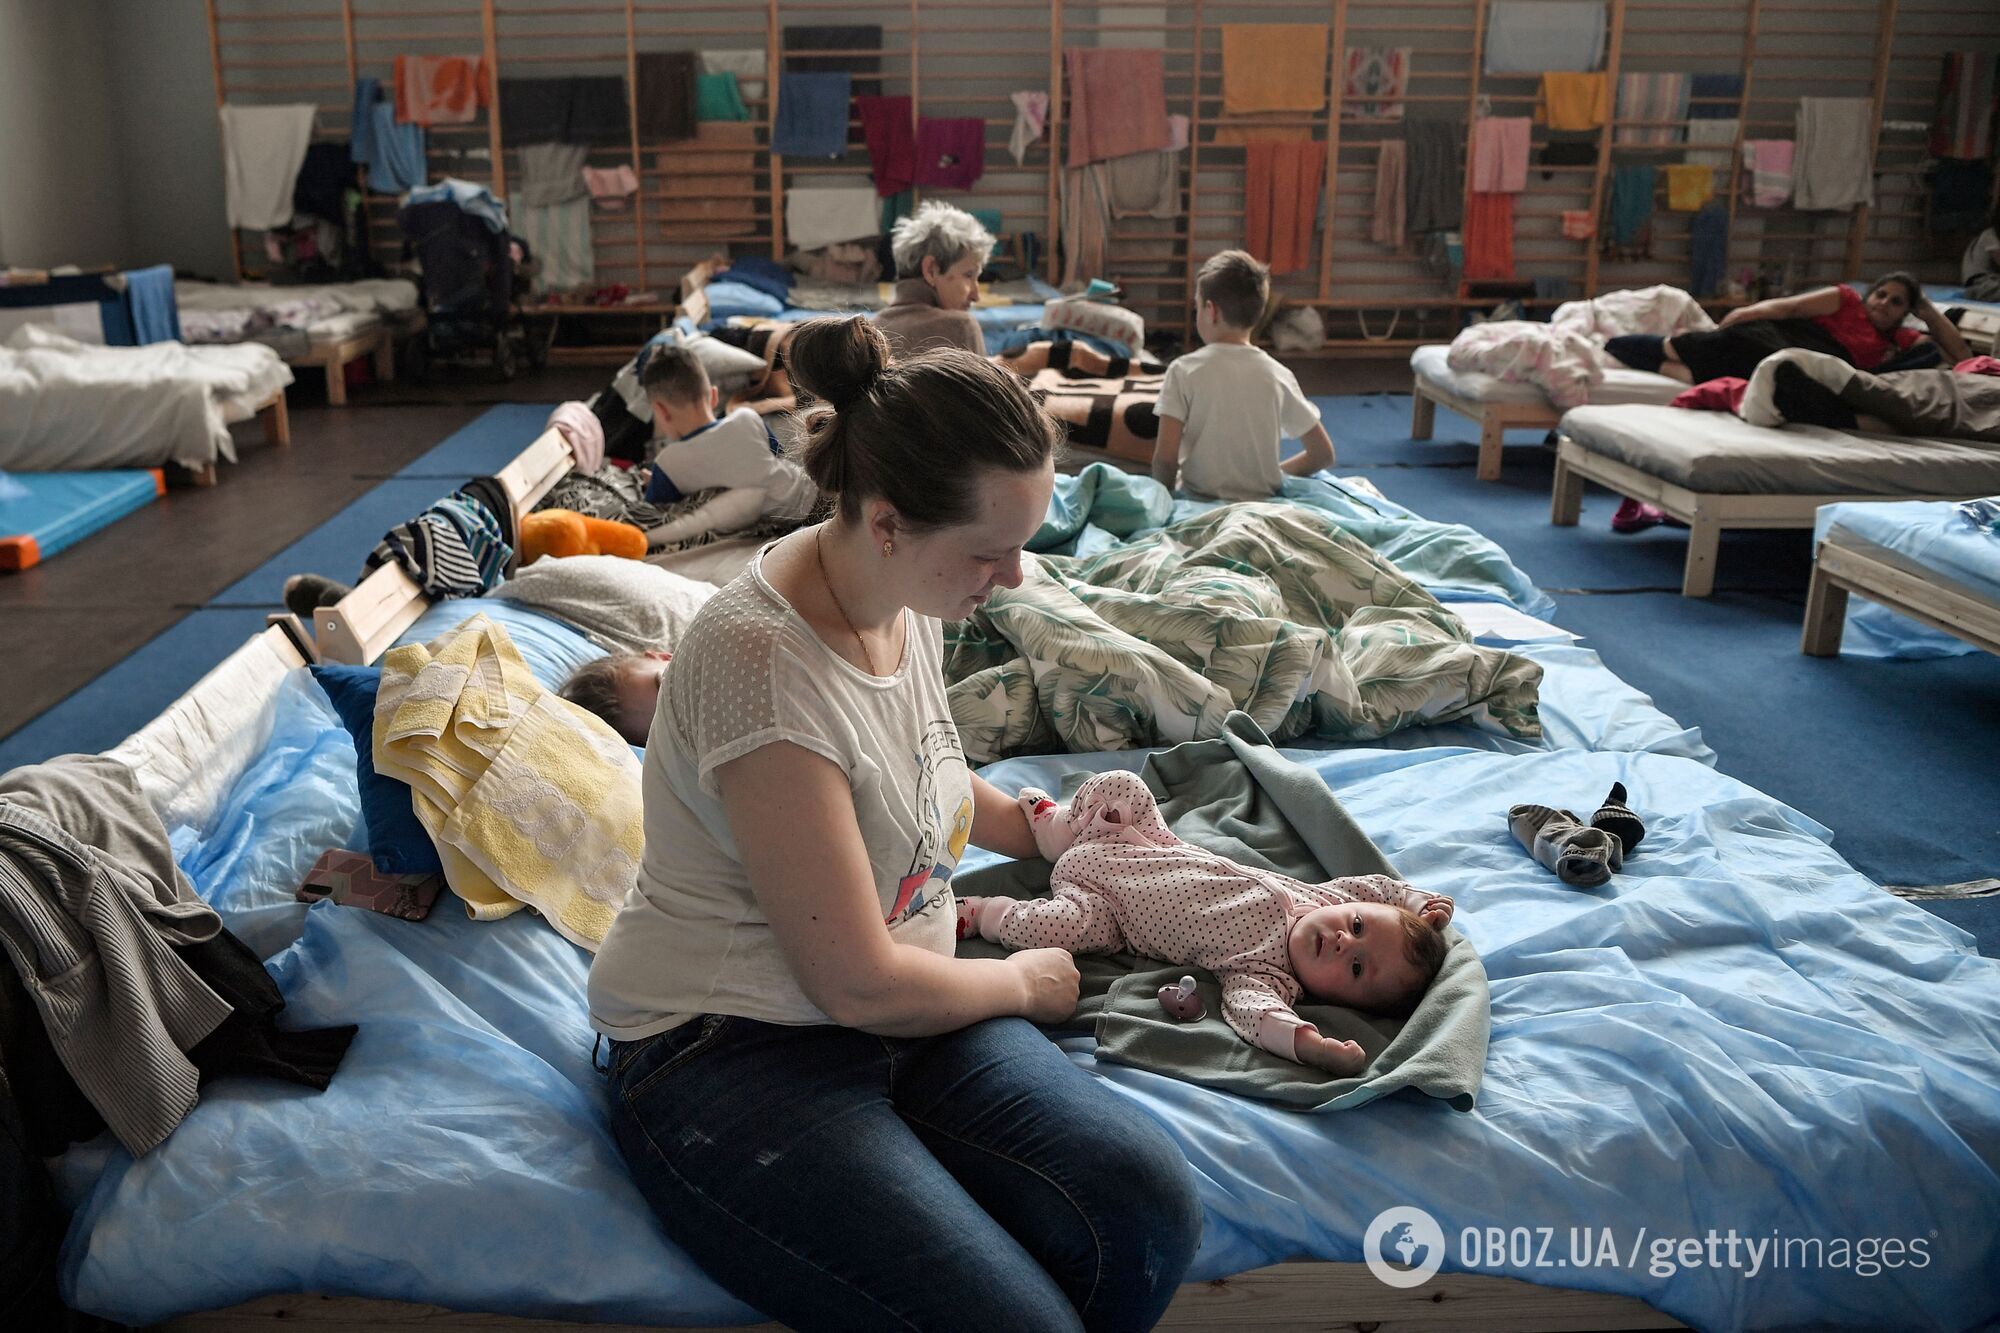 Некоторые украинские матери и дети эмигрировали в Польшу